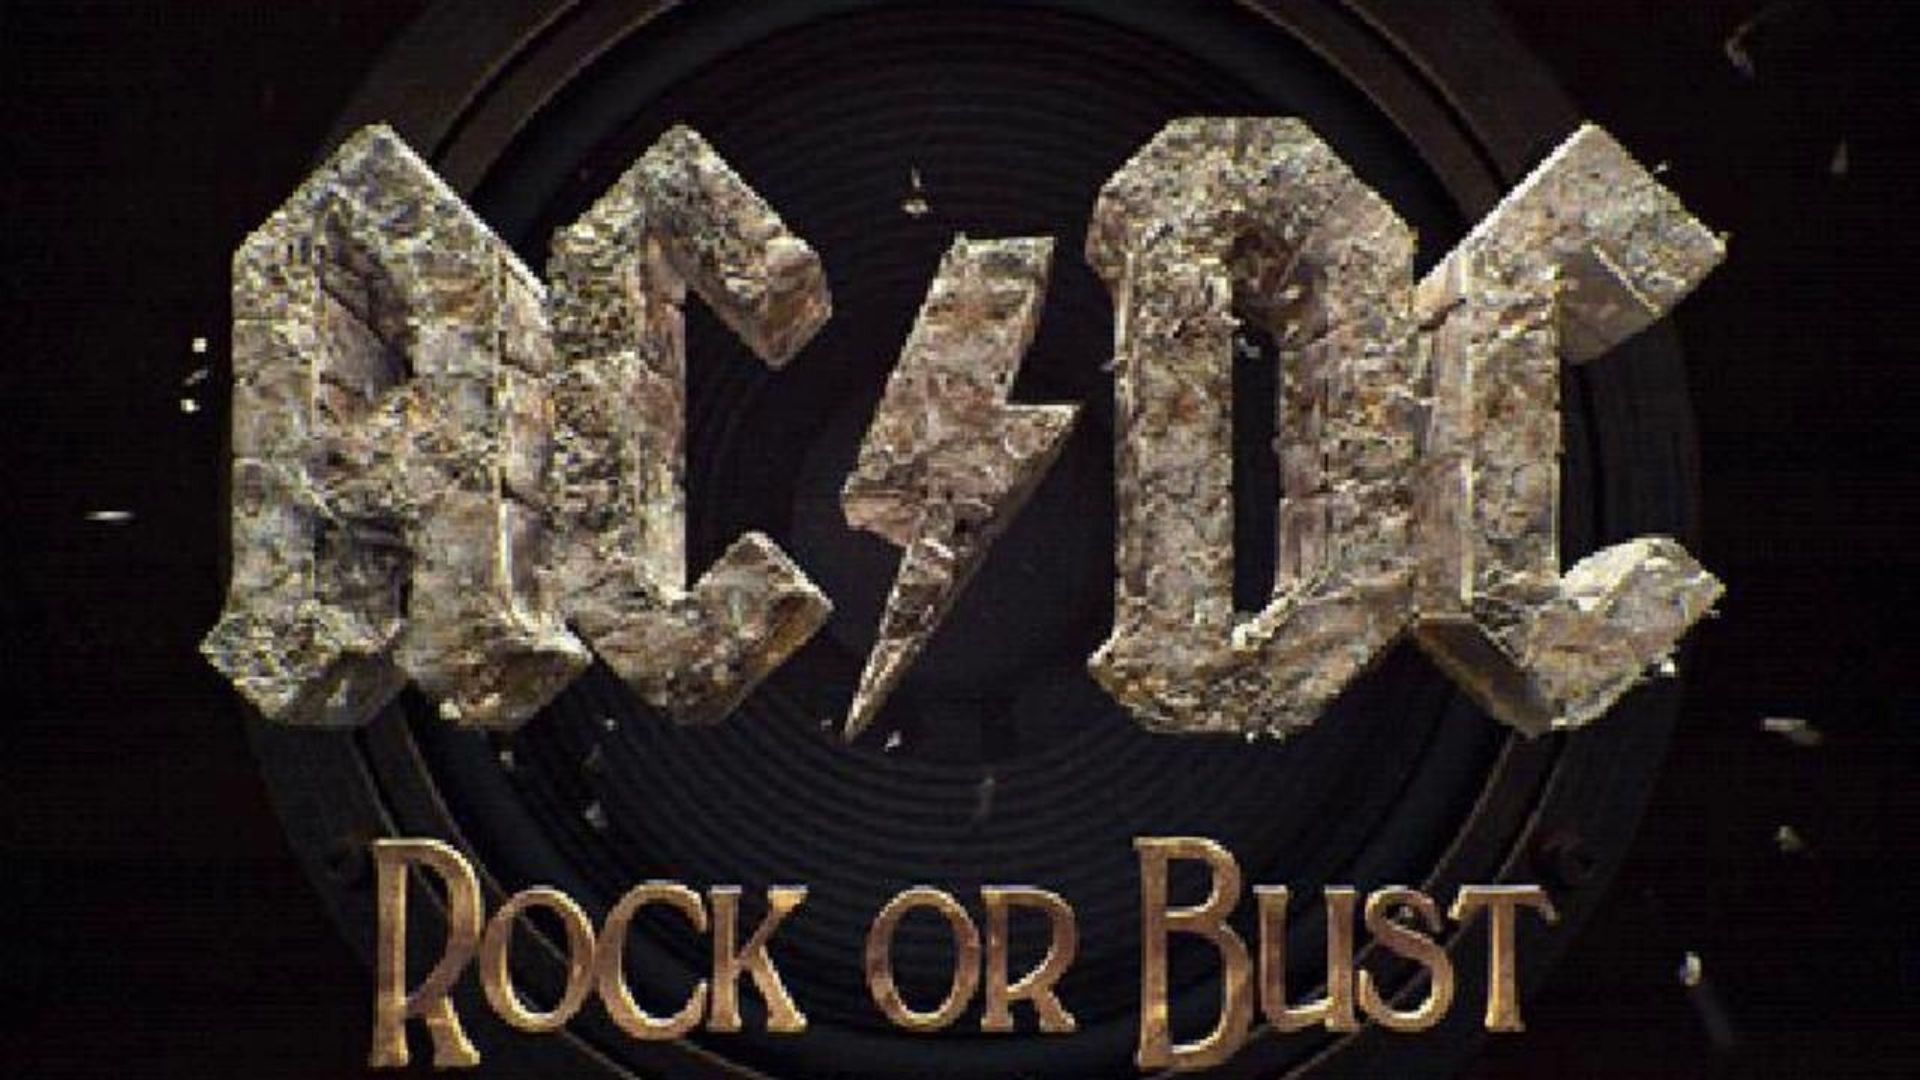 L'album "Rock or Bust" et les autres tubes de AC/DC désormais disponibles sur Spotify, Apple Music et Rdio